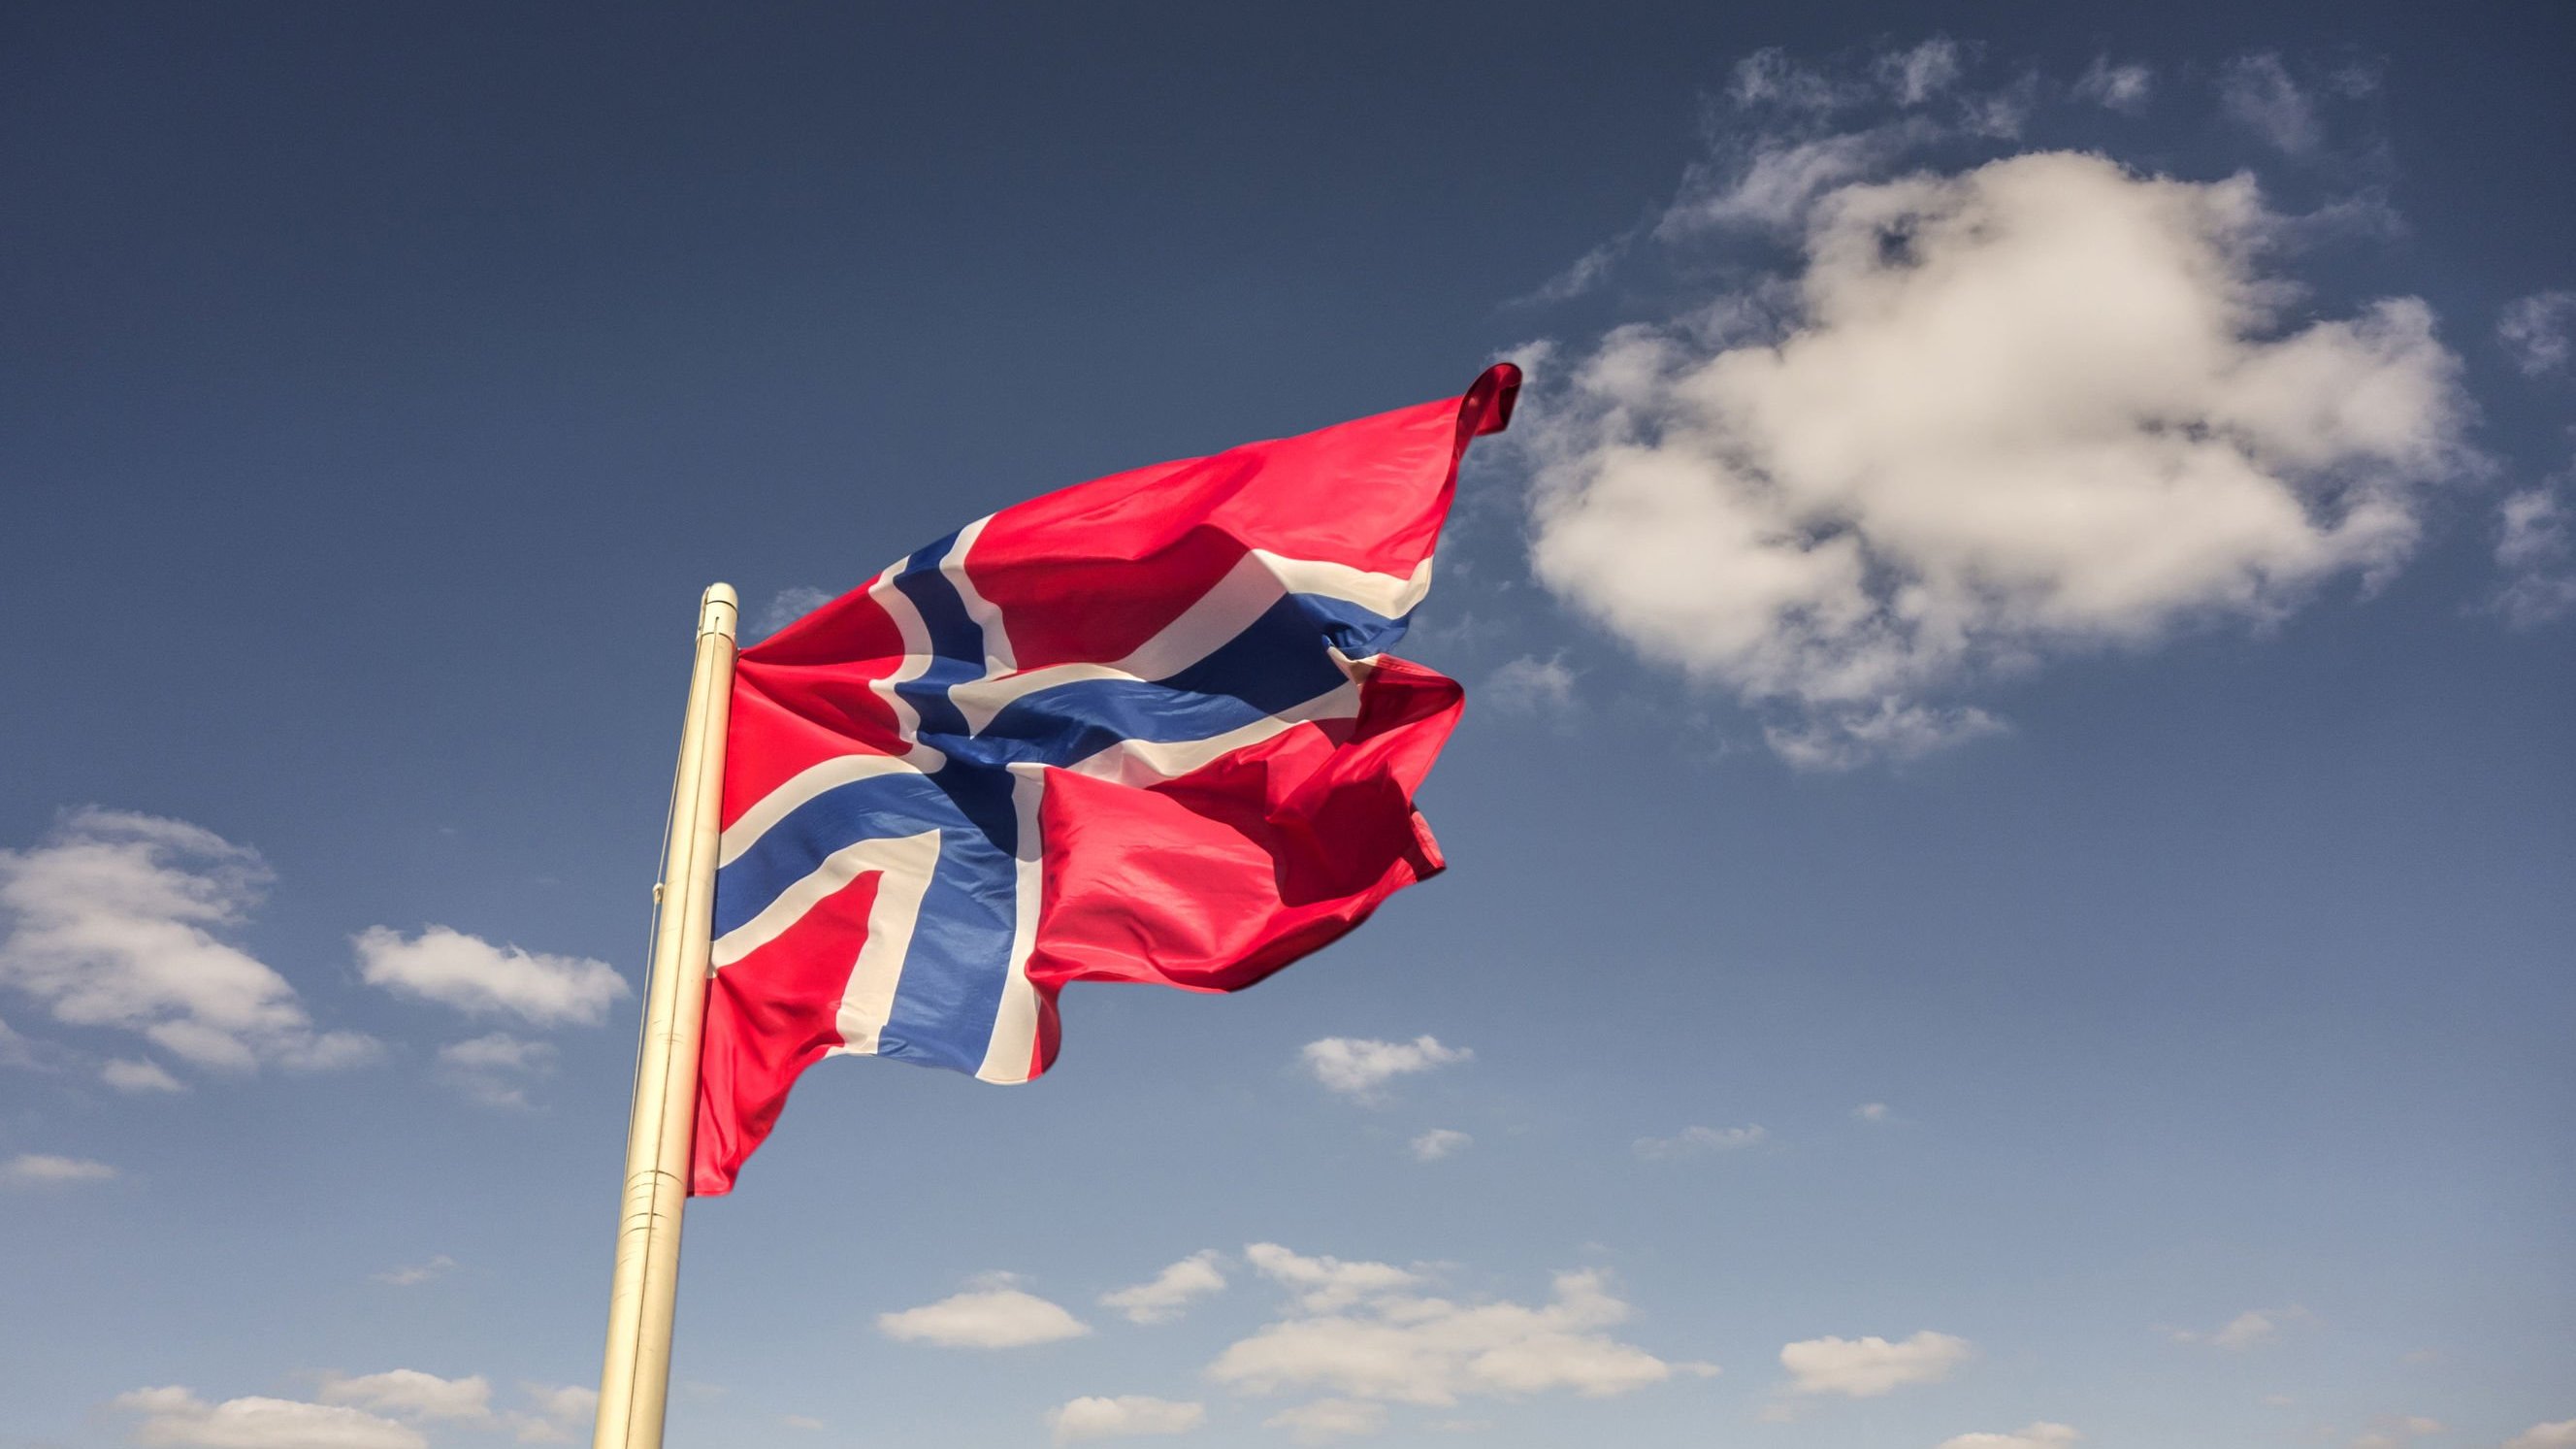 Bandeira da Noruega.